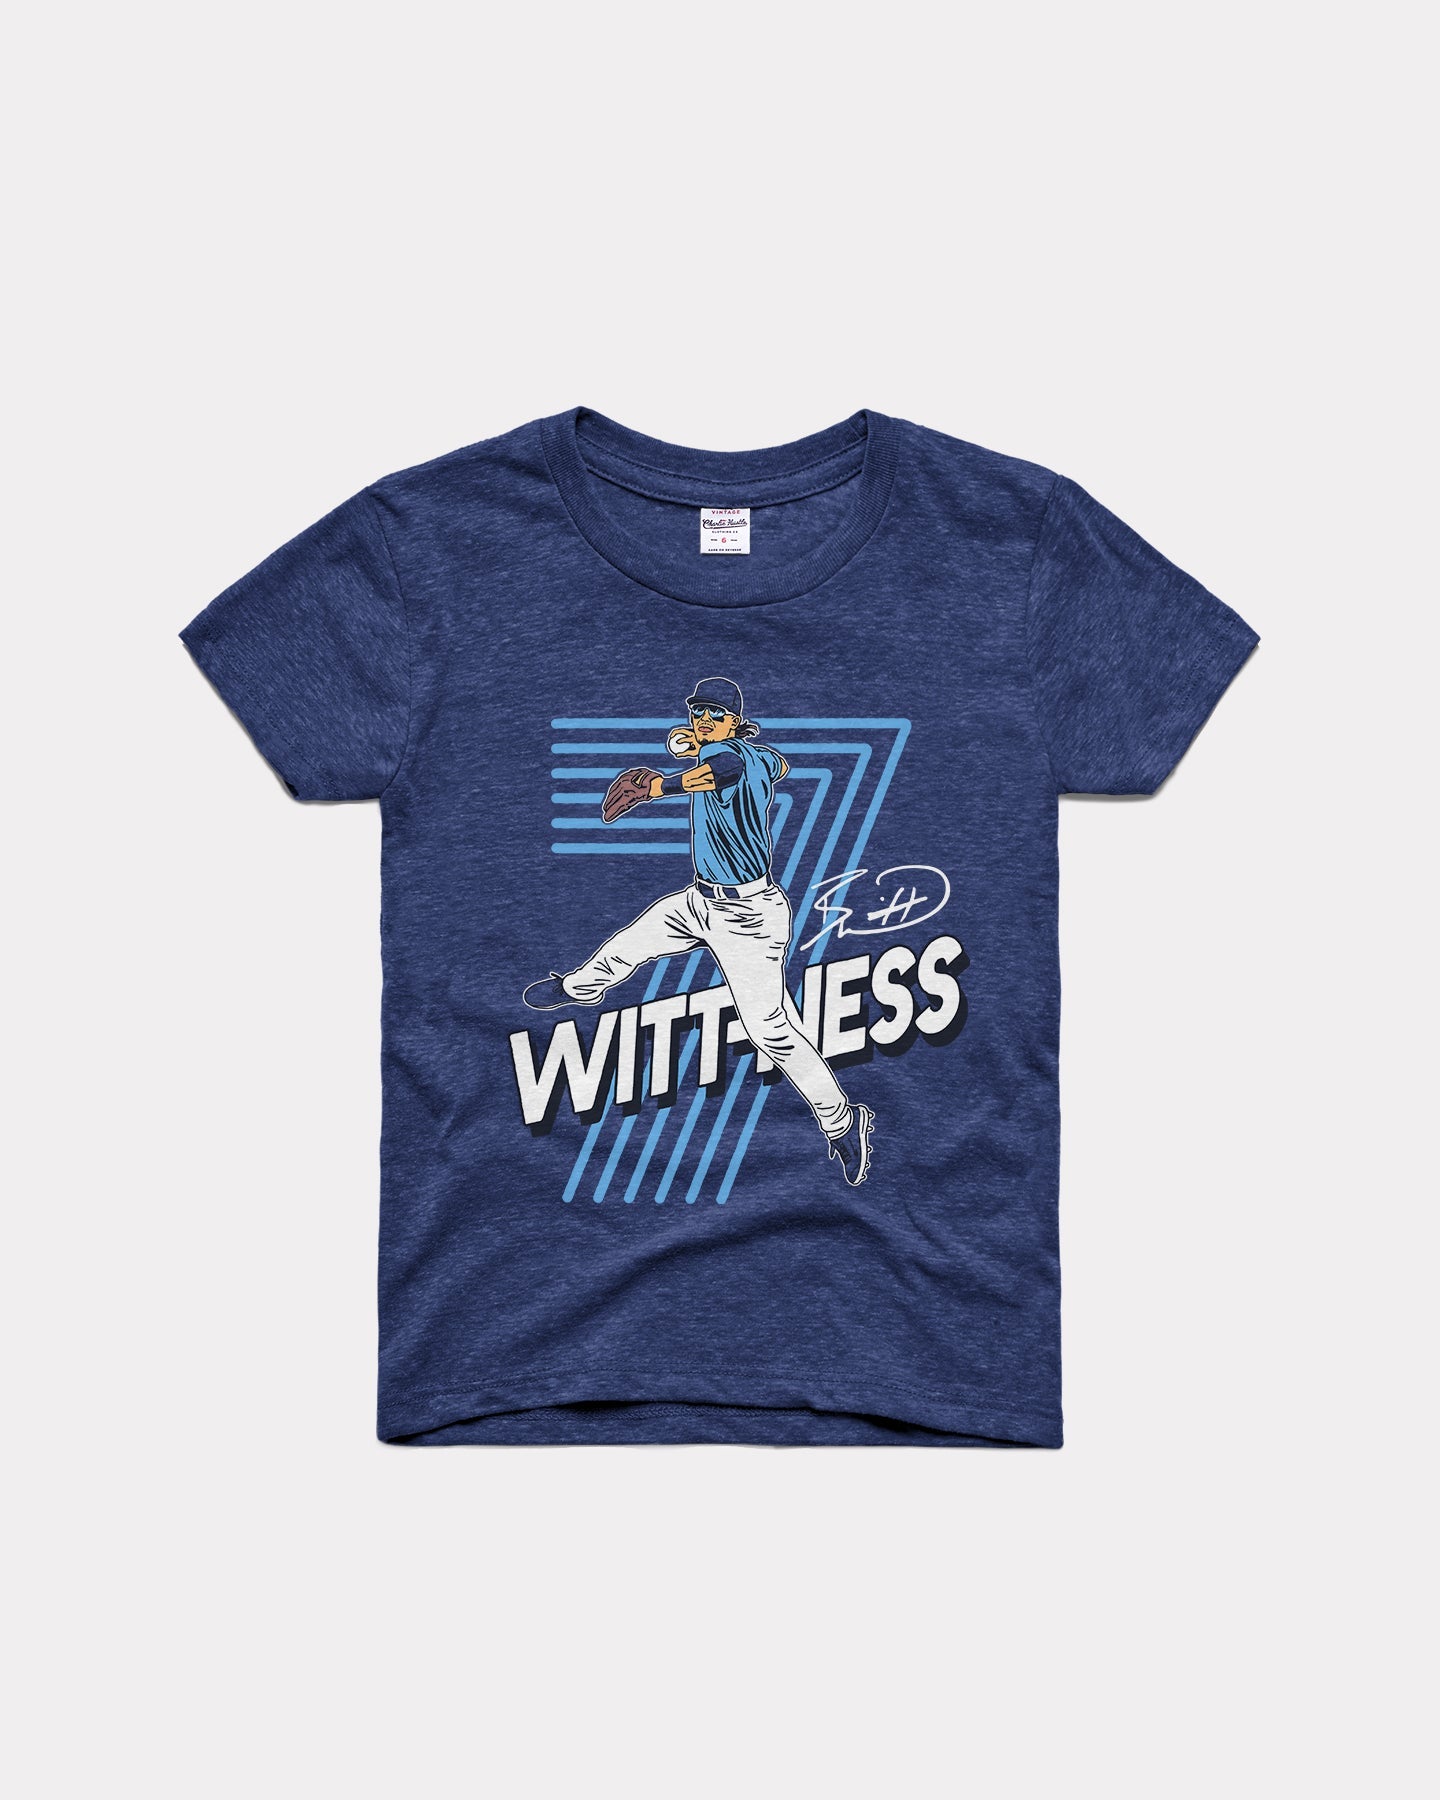 Kids Bobby Witt Jr Wittness Navy Vintage T-Shirt | Charlie Hustle 04 / 4T